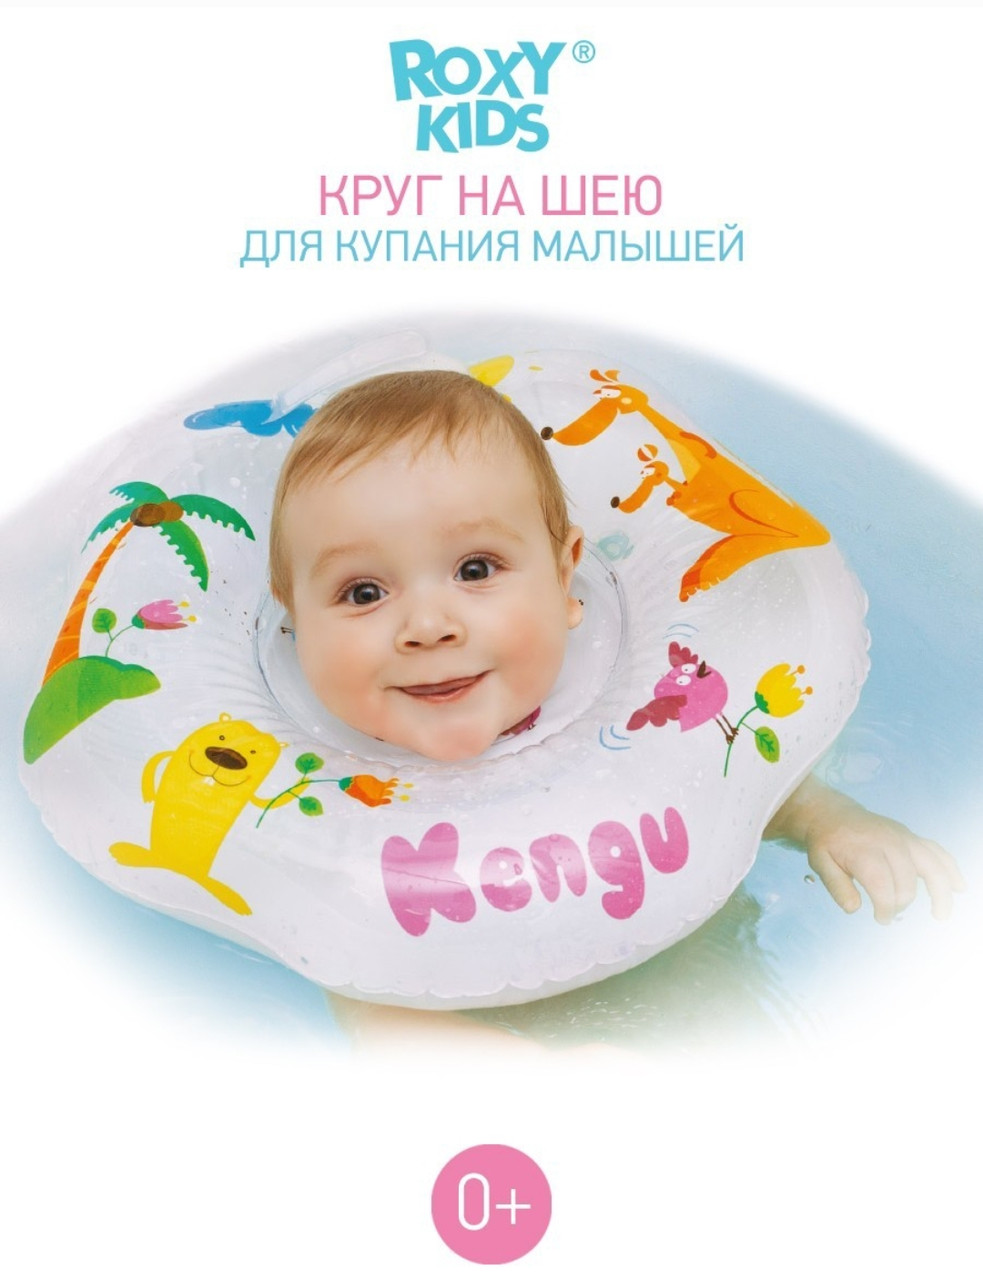 Круг для купания новорождённых и малышей на шею Kengu от Roxy-Kinds, фото 1